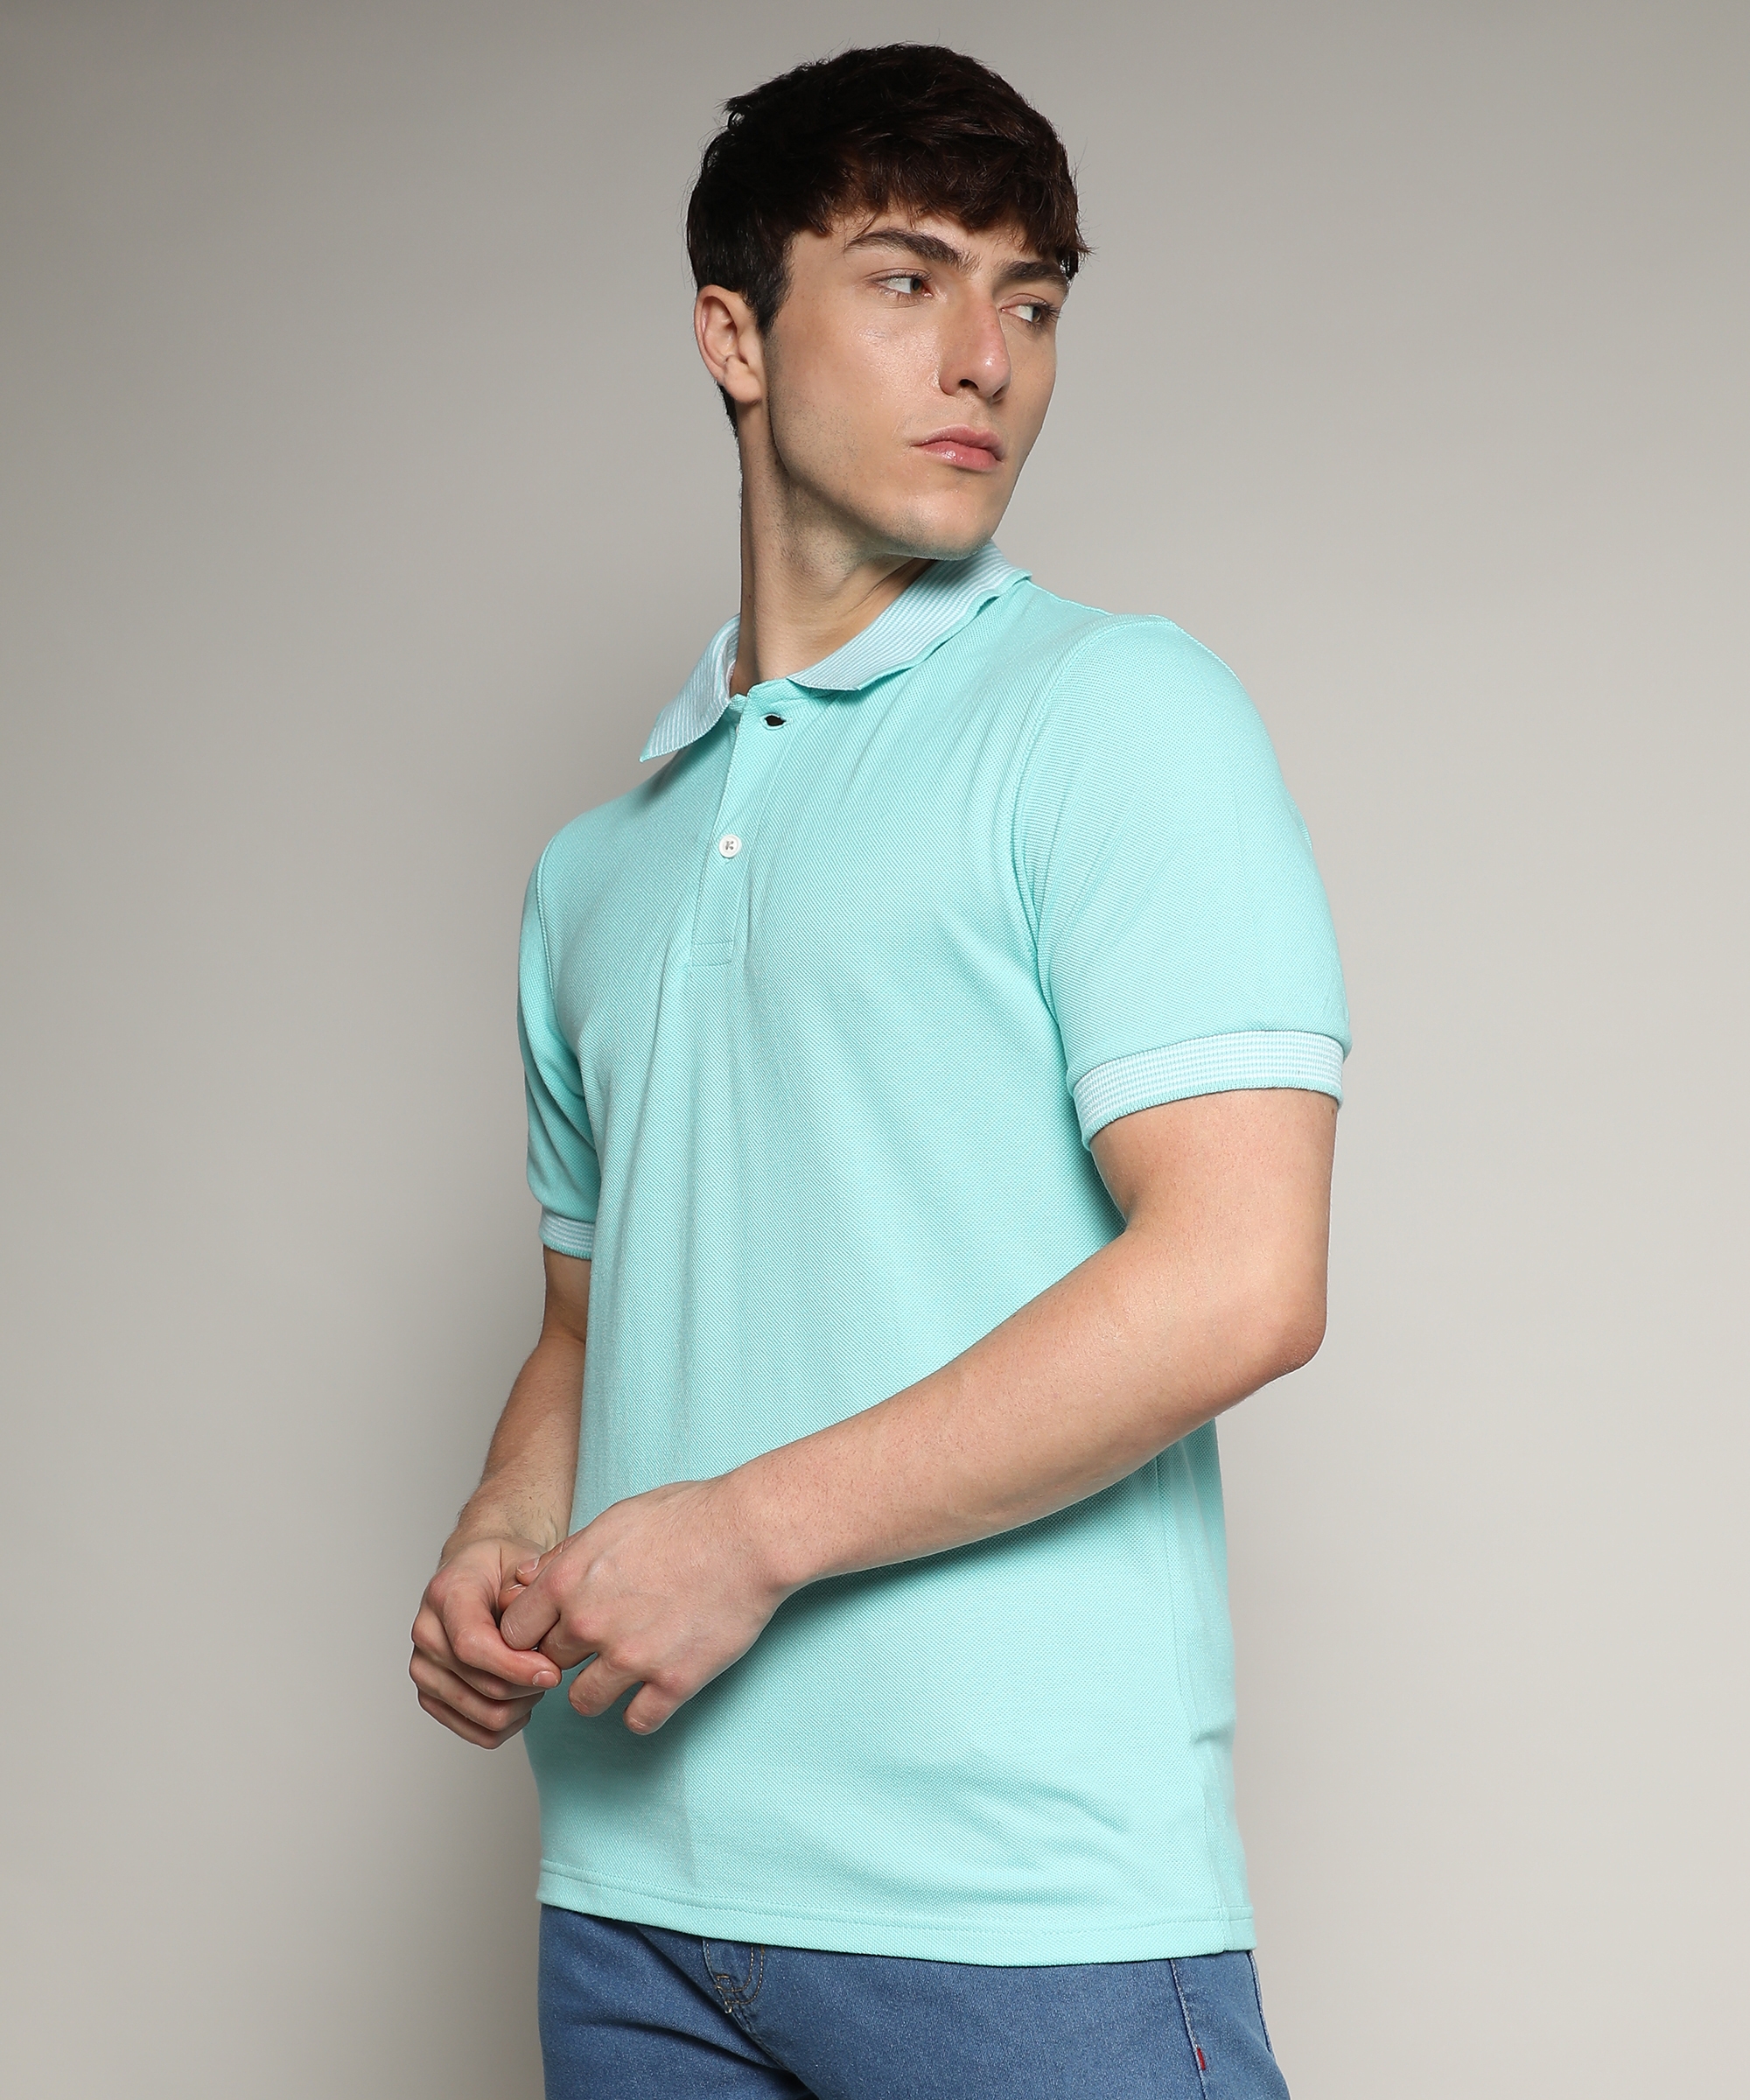 Men's Aqua Blue Solid Polo T-Shirt